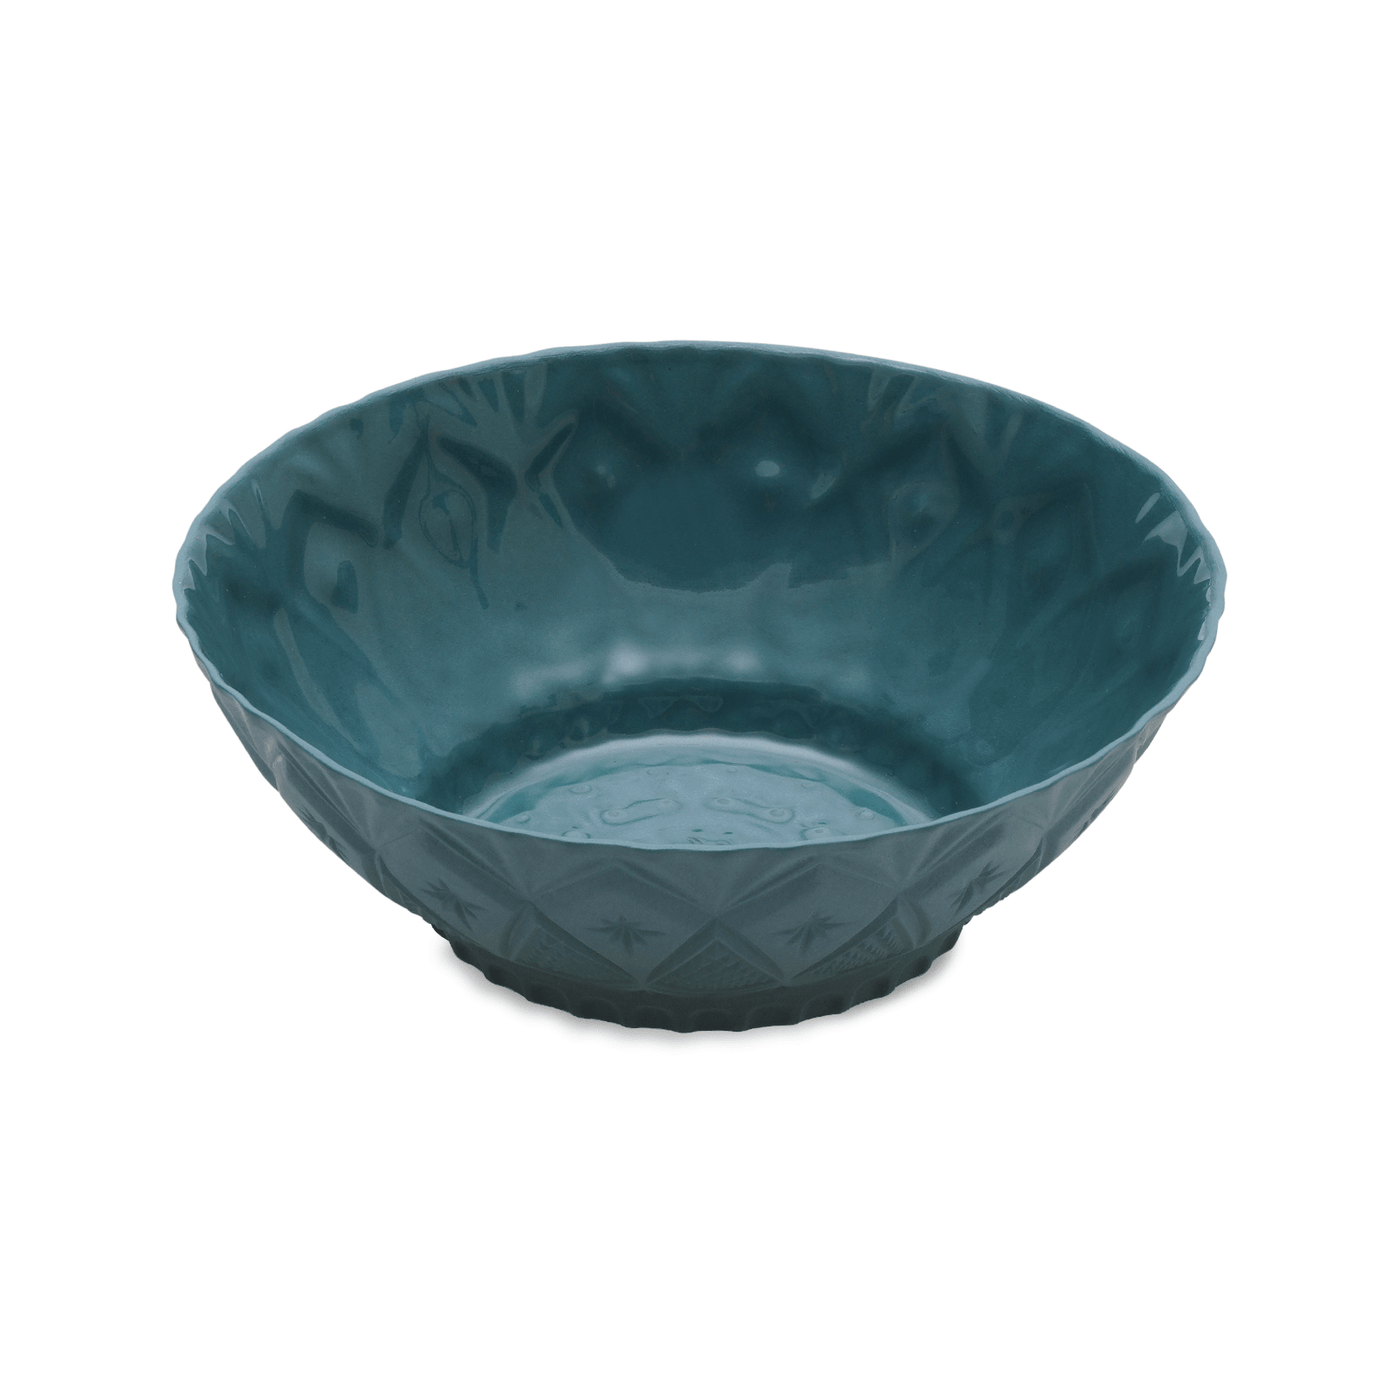 Geo Handmade Bowl, Dark Green, 15 cm Bowls sazy.com